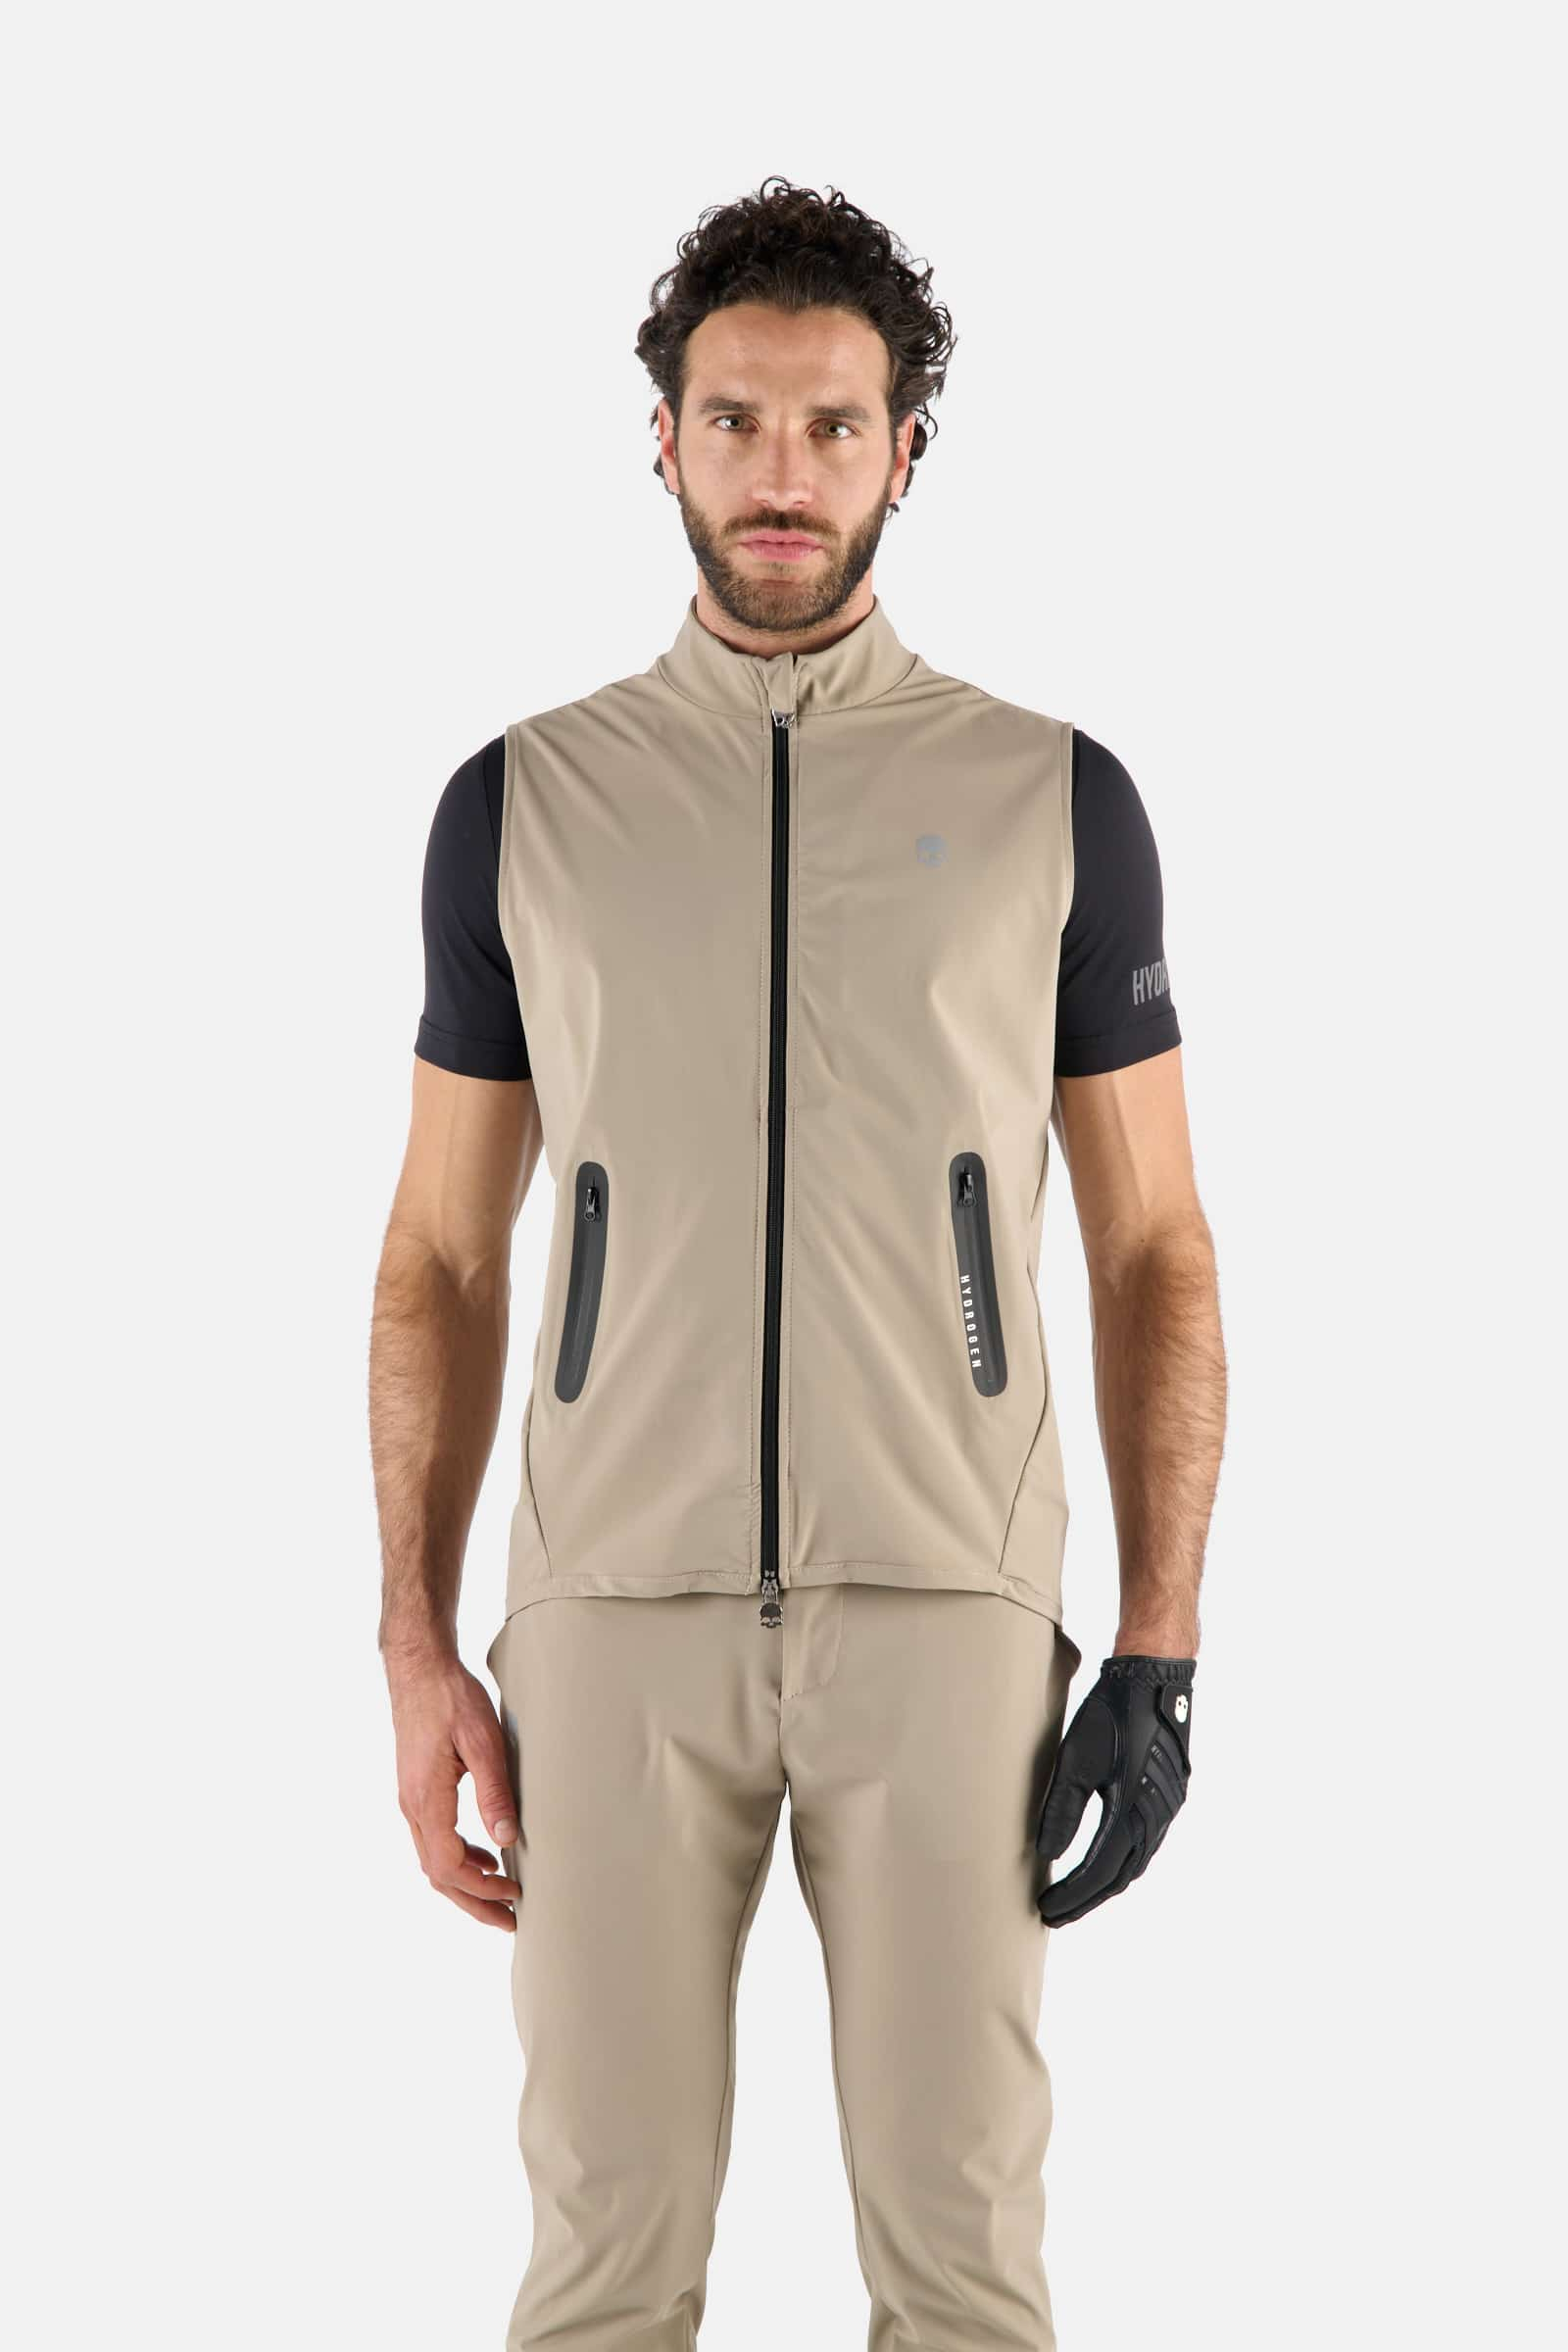 GOLF VEST - BEIGE - Hydrogen - Luxury Sportwear